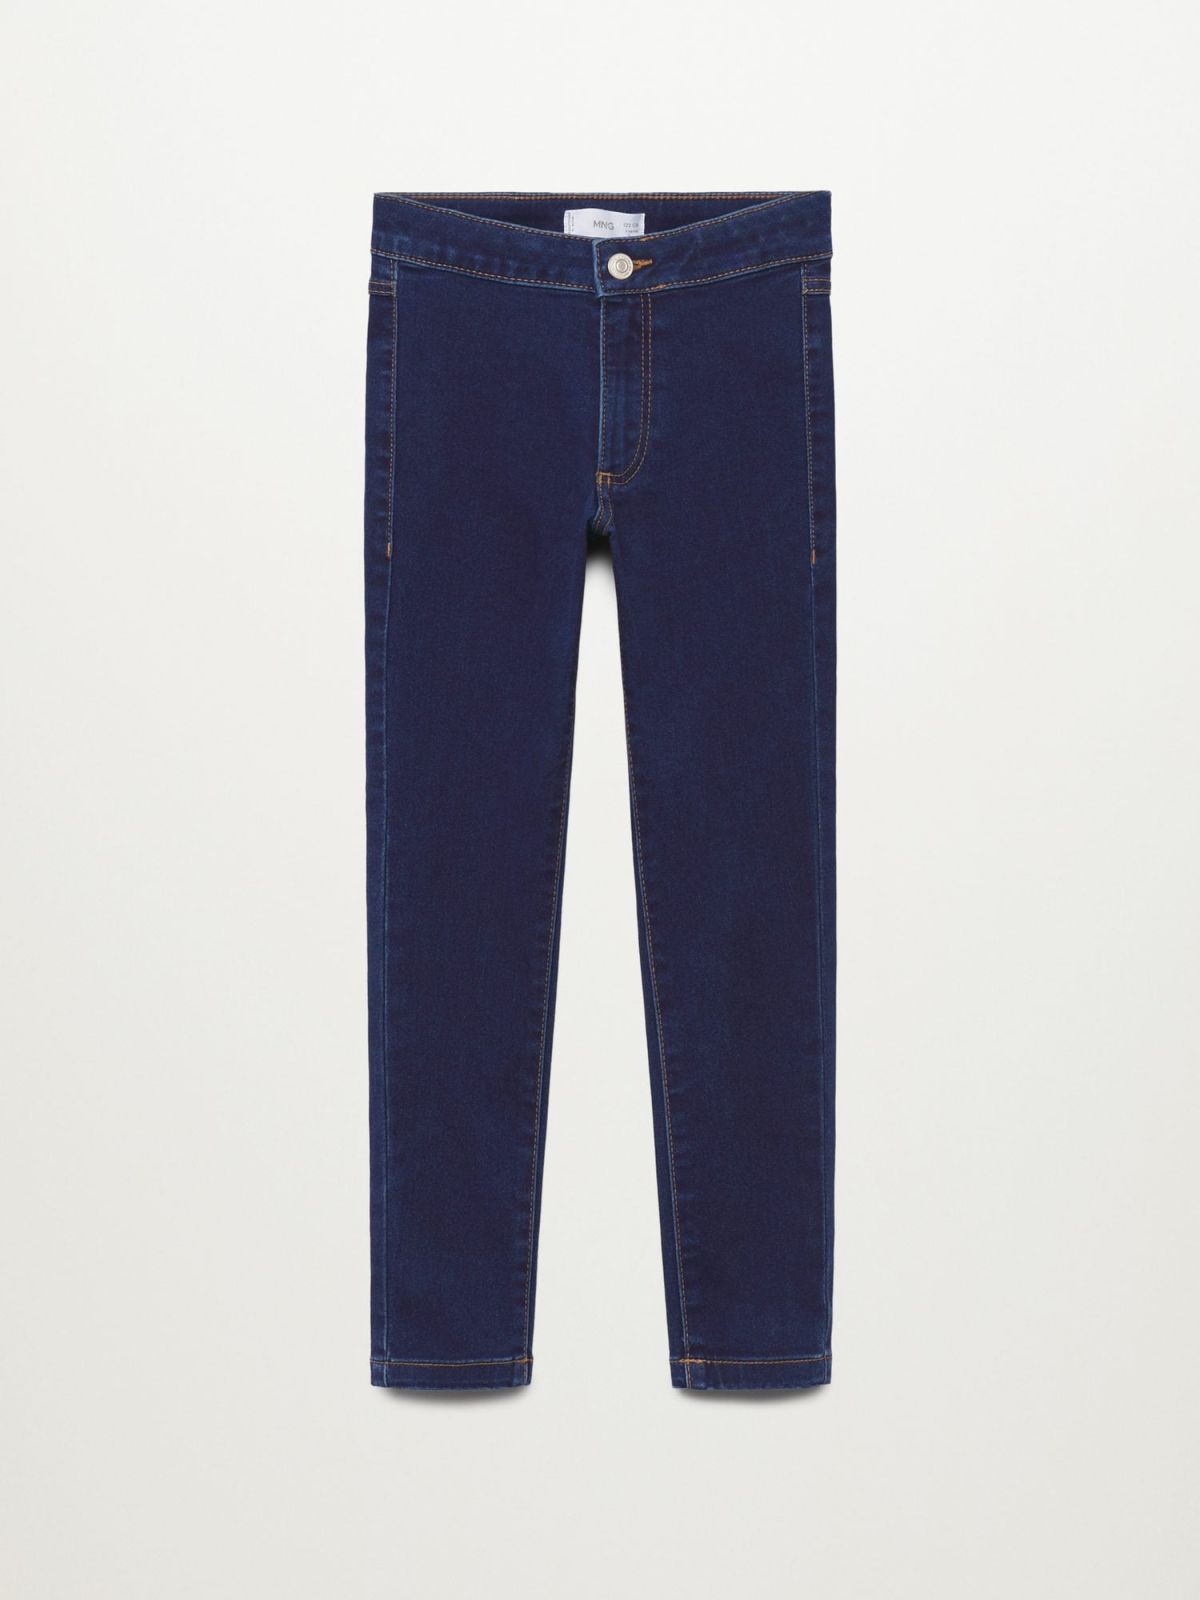  ג'ינס ארוך בגזרת Super Skinny / בנות של MANGO